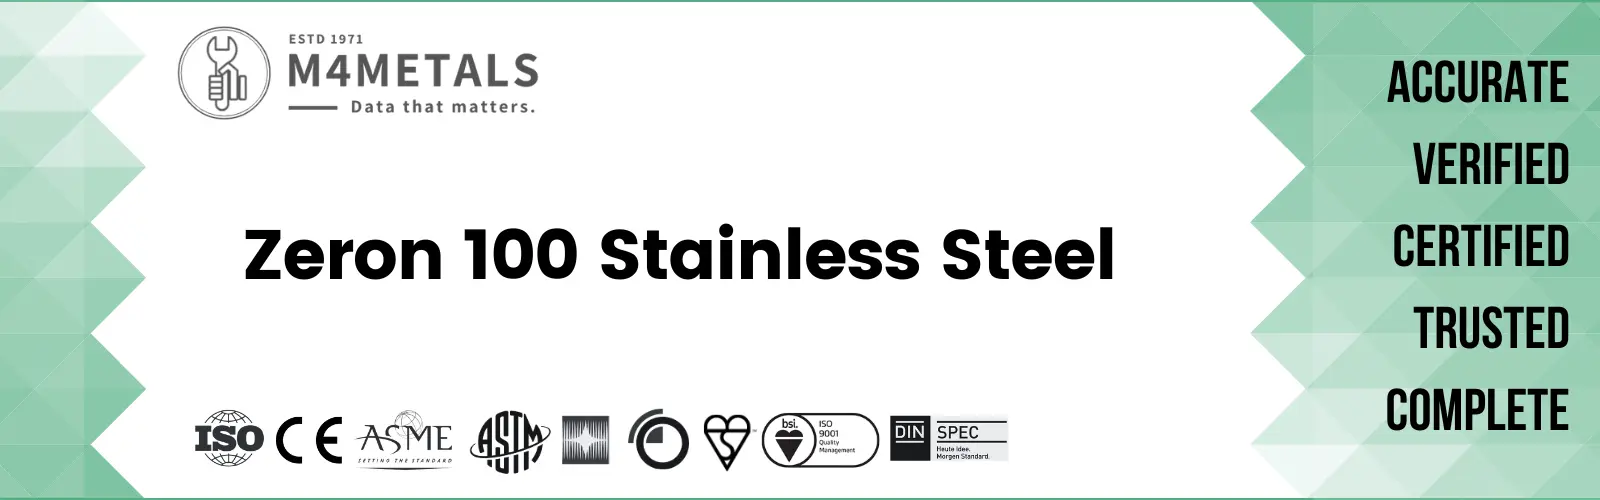 Zeron 100 Super Duplex Stainless Steel